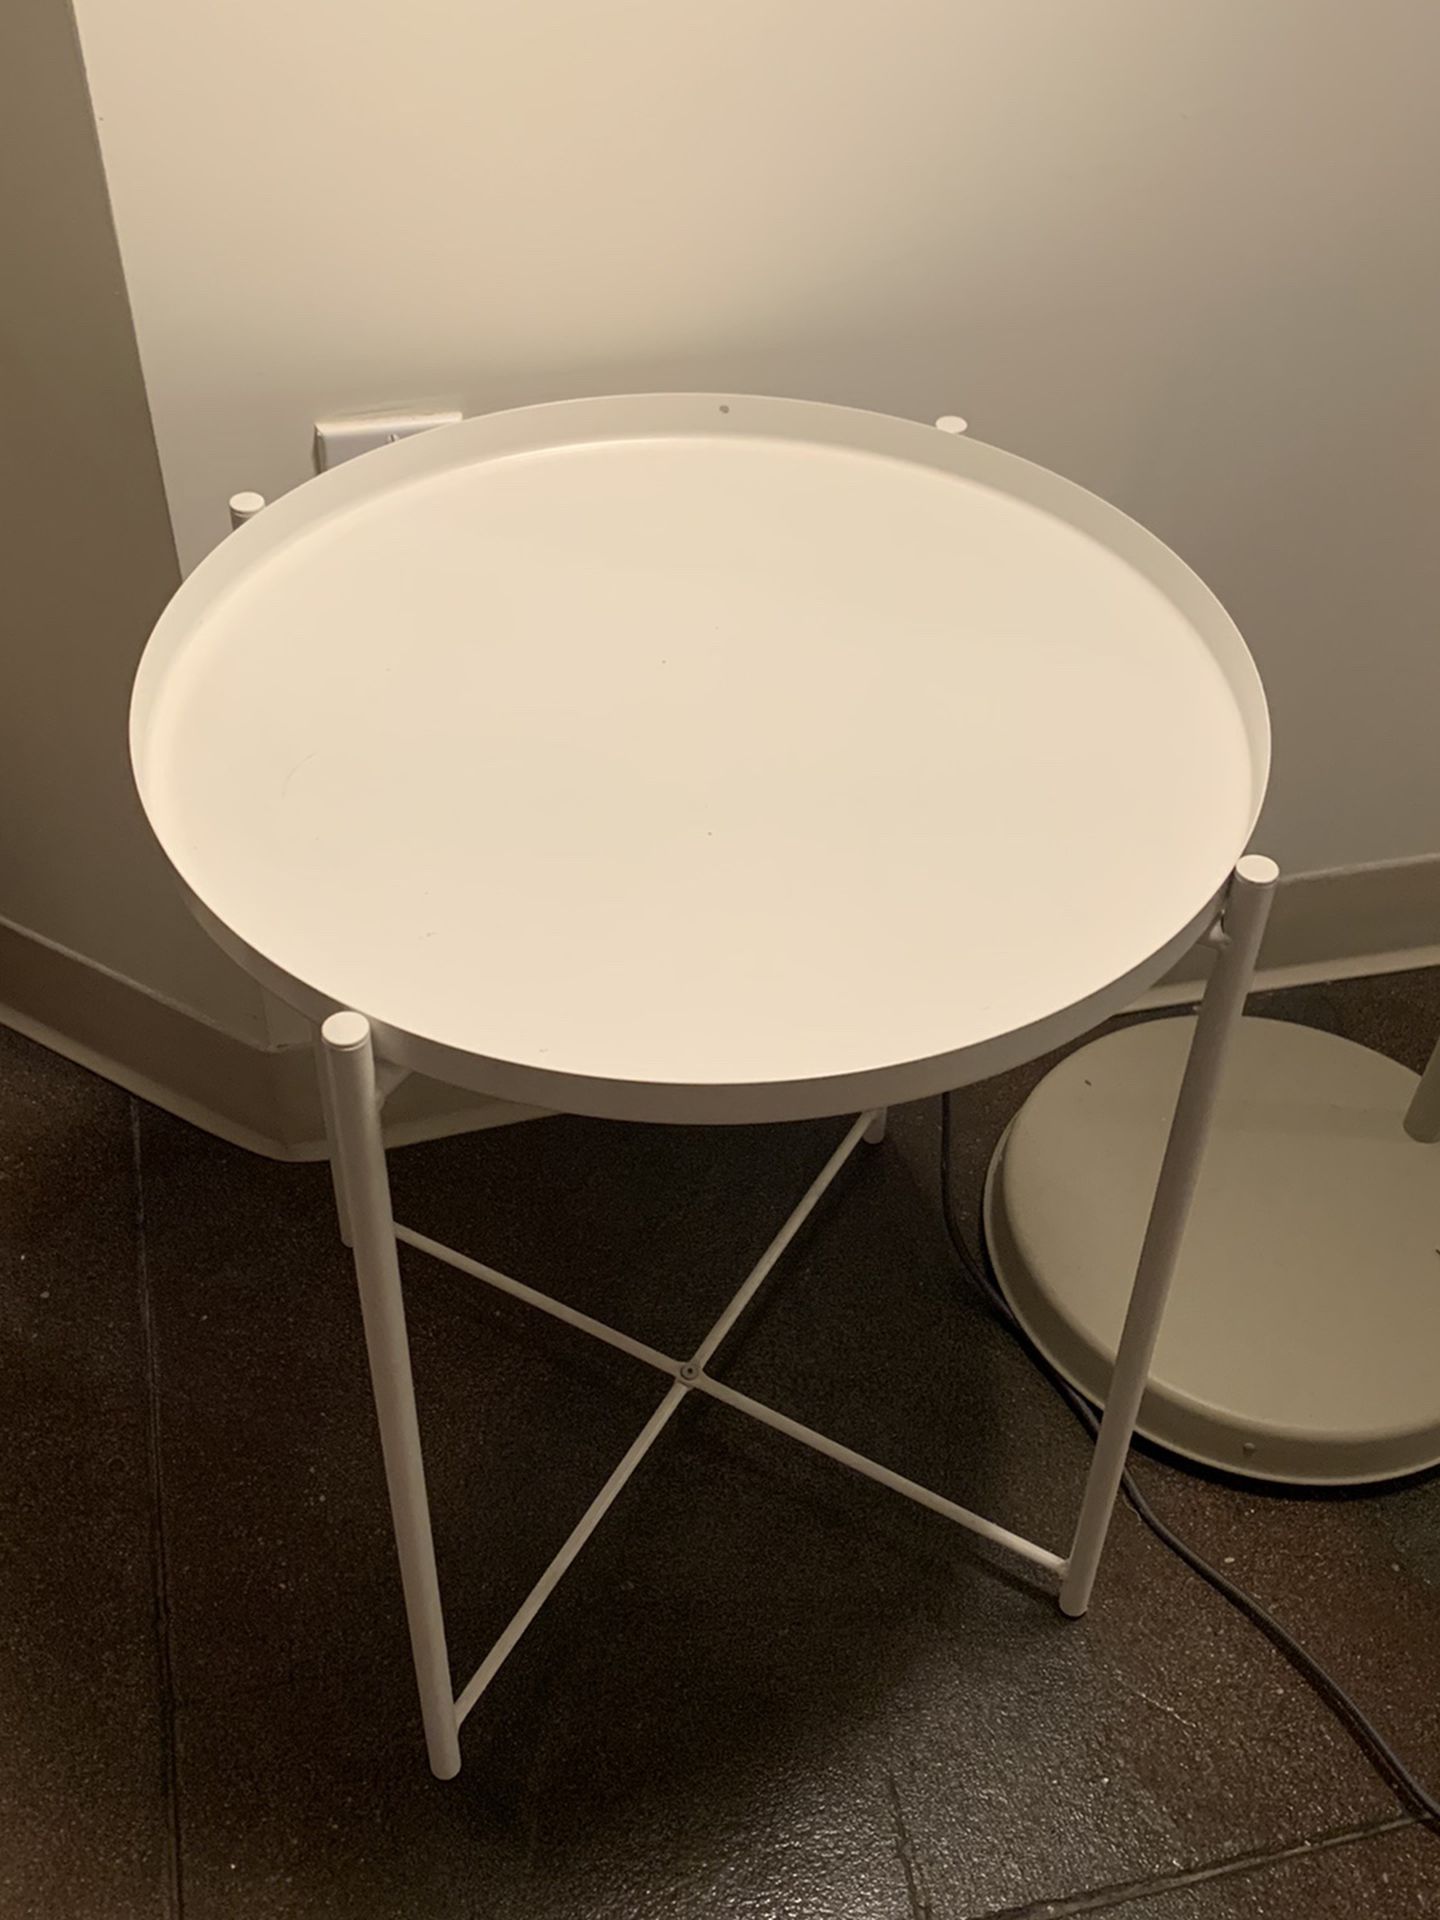 IKEA Tray Table